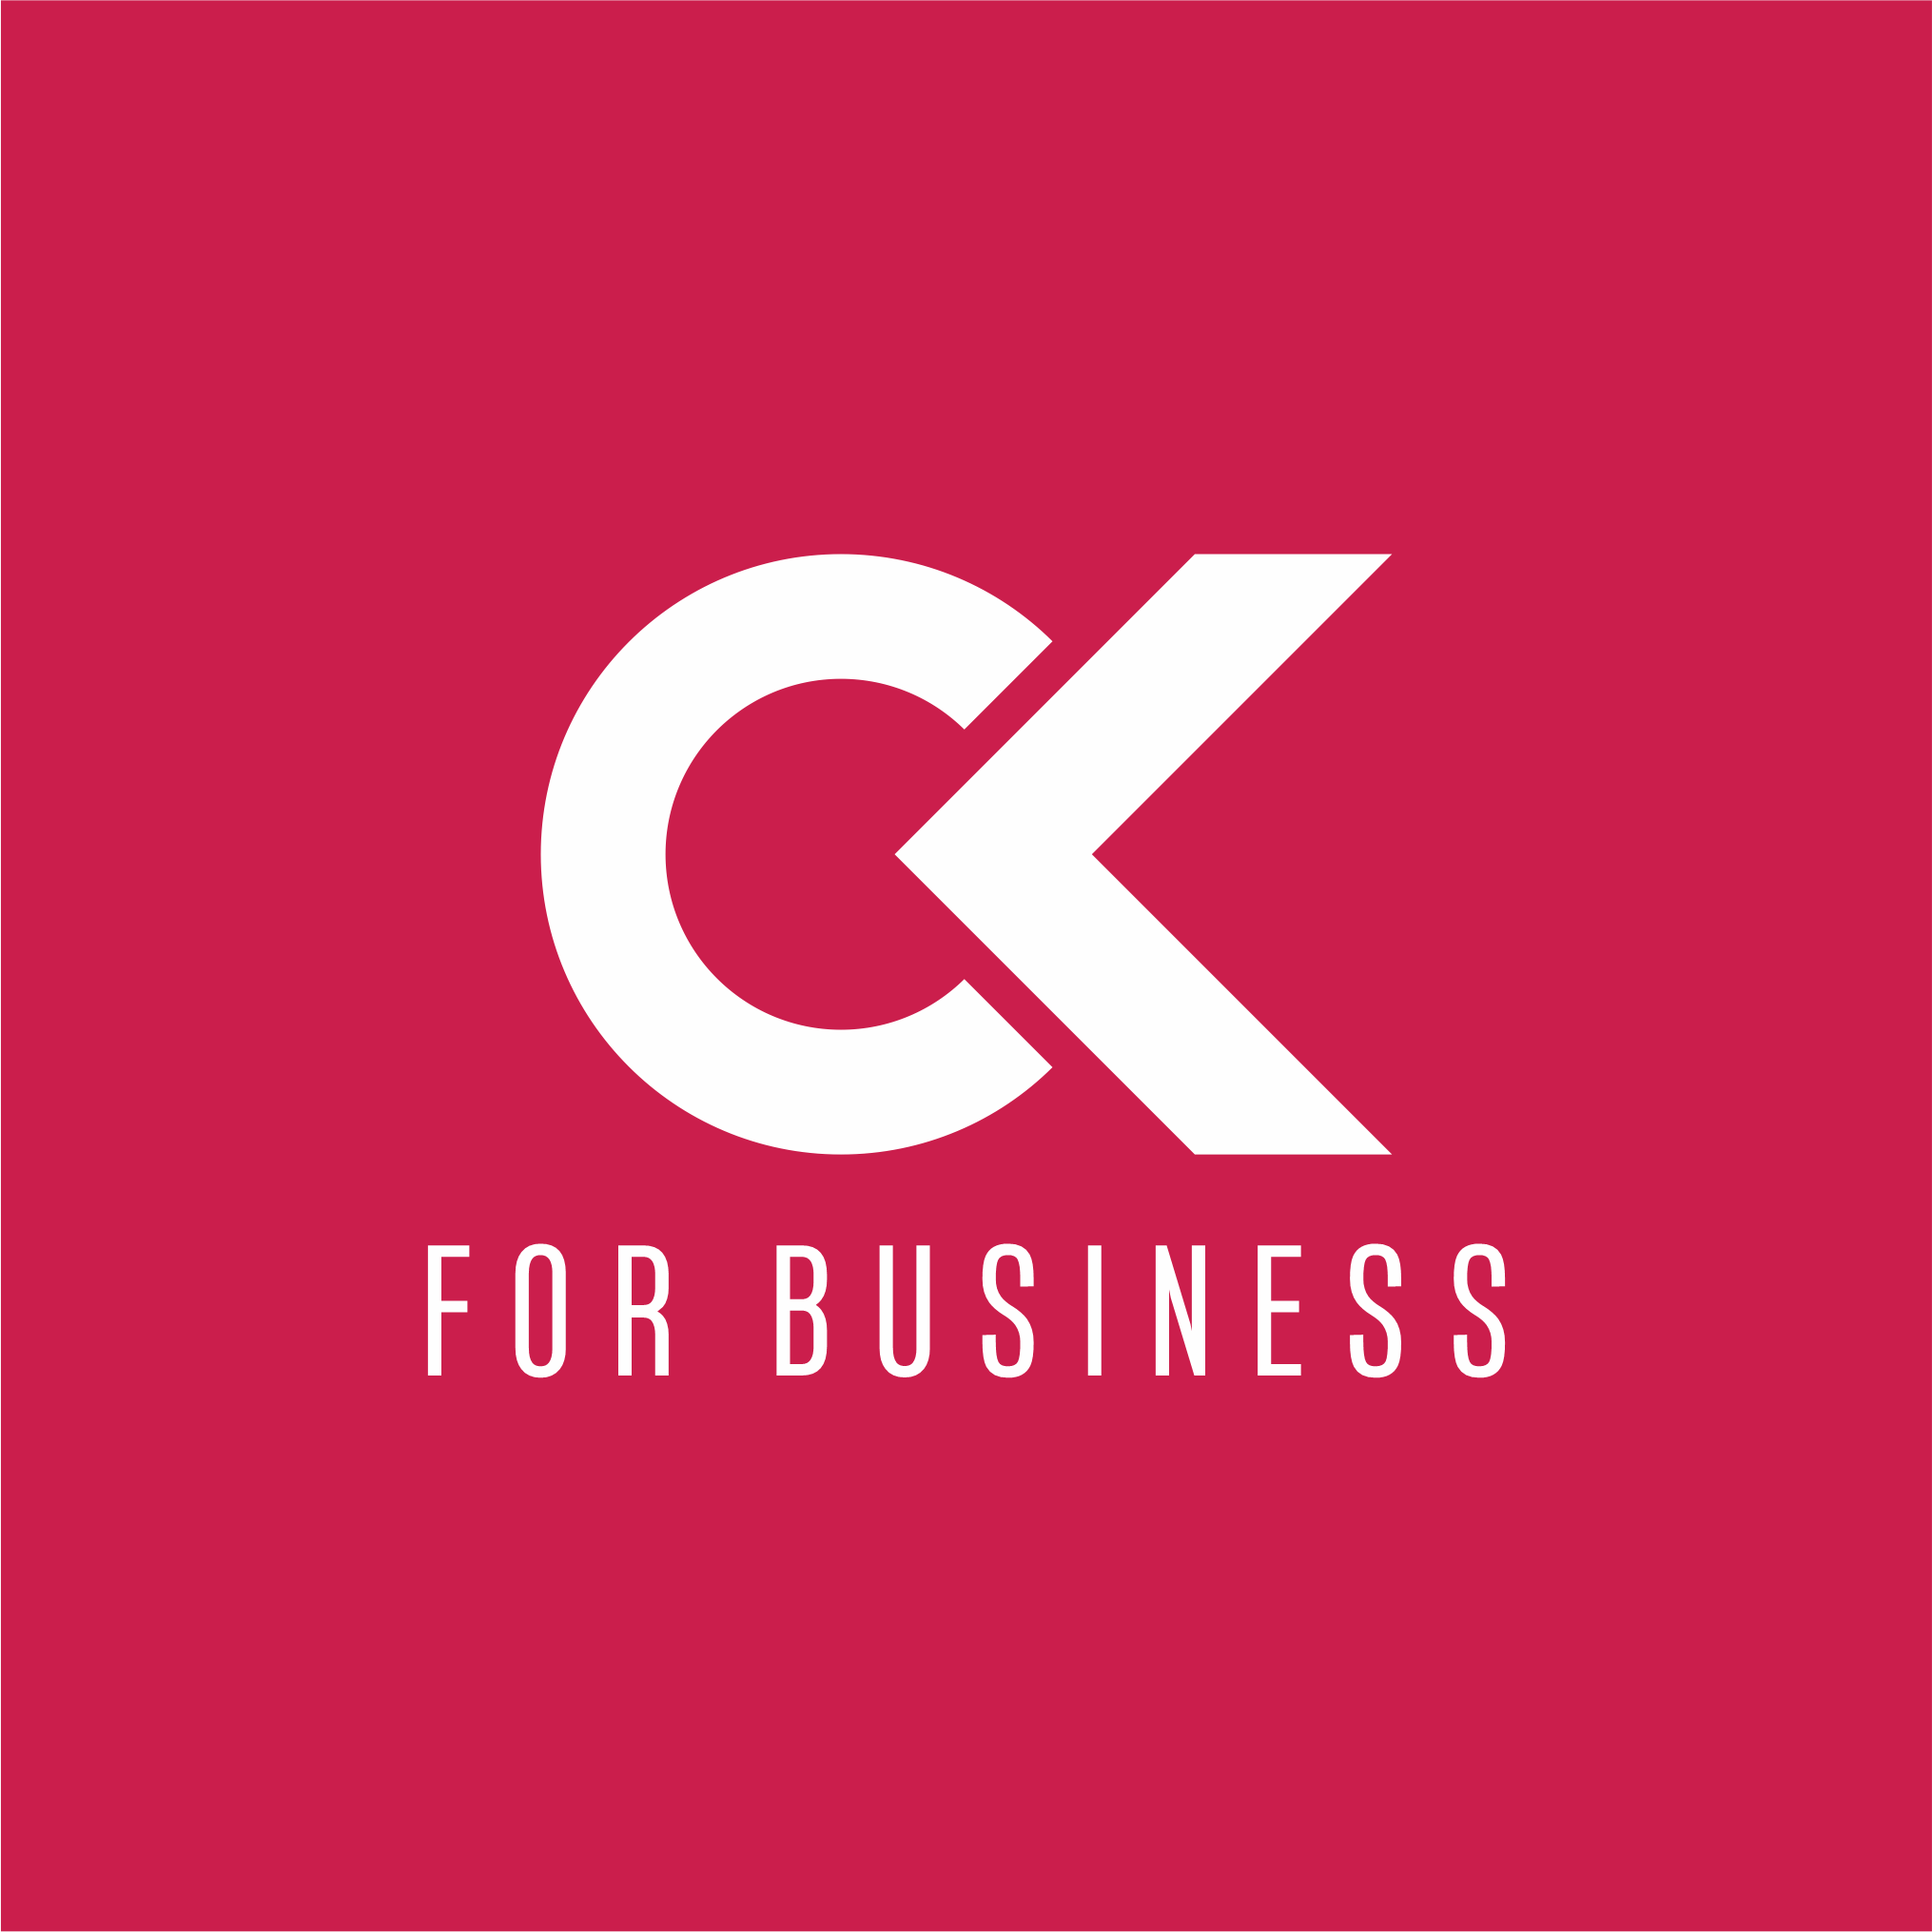 ck-business